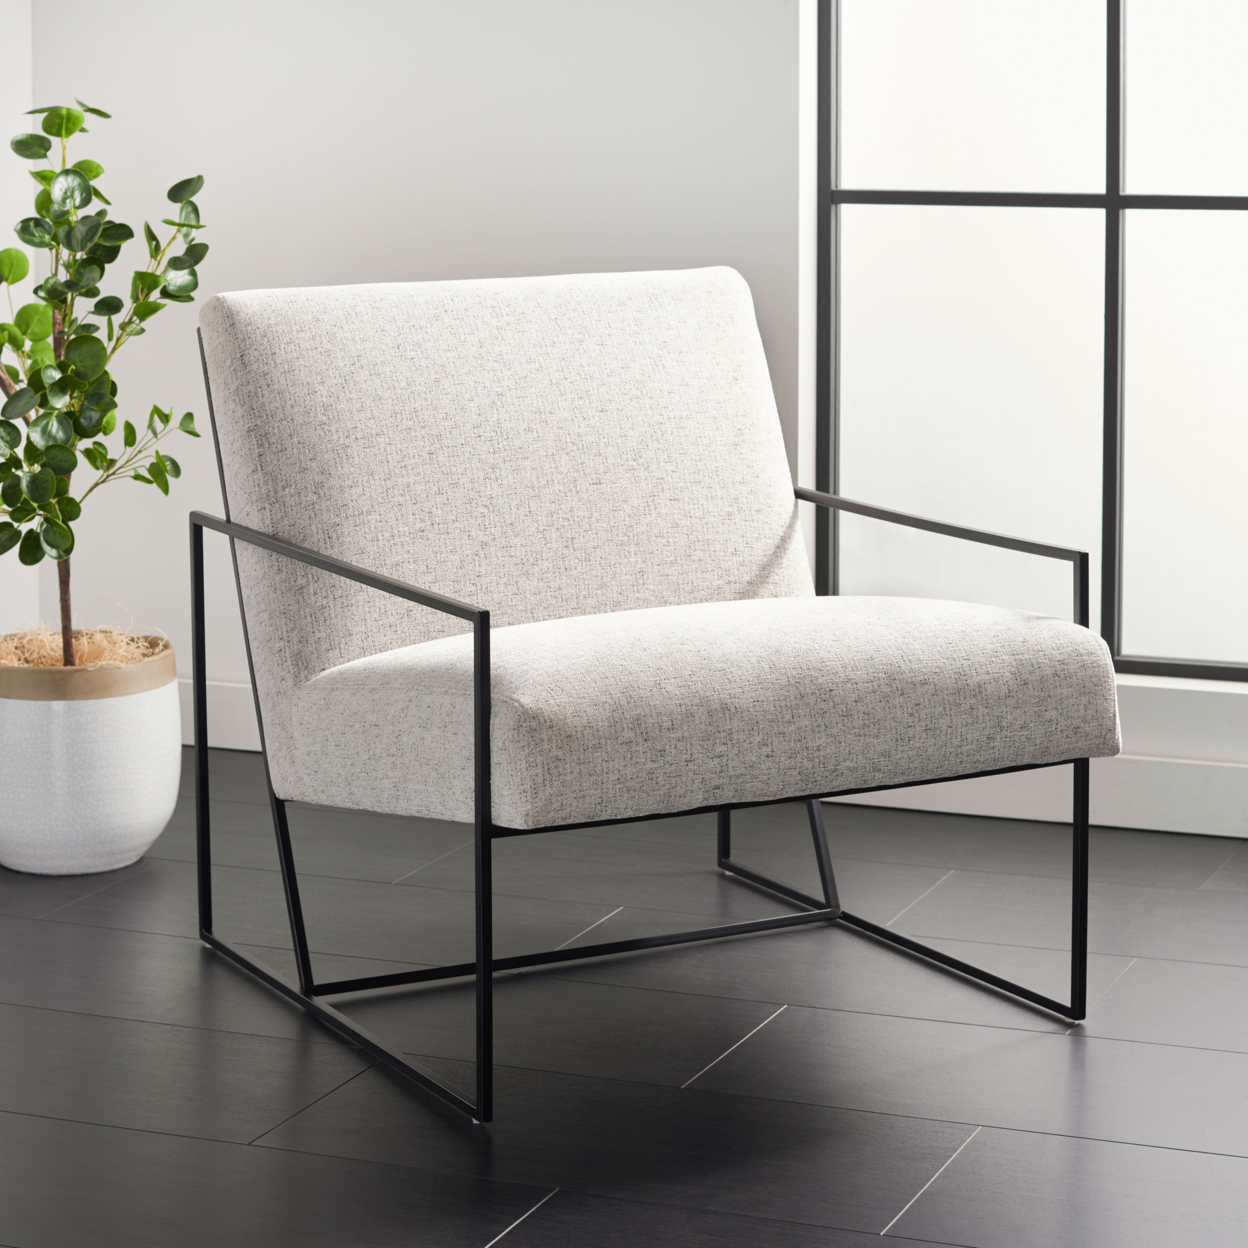 SAFAVIEH Atheris Arm Chair Light Grey / Black